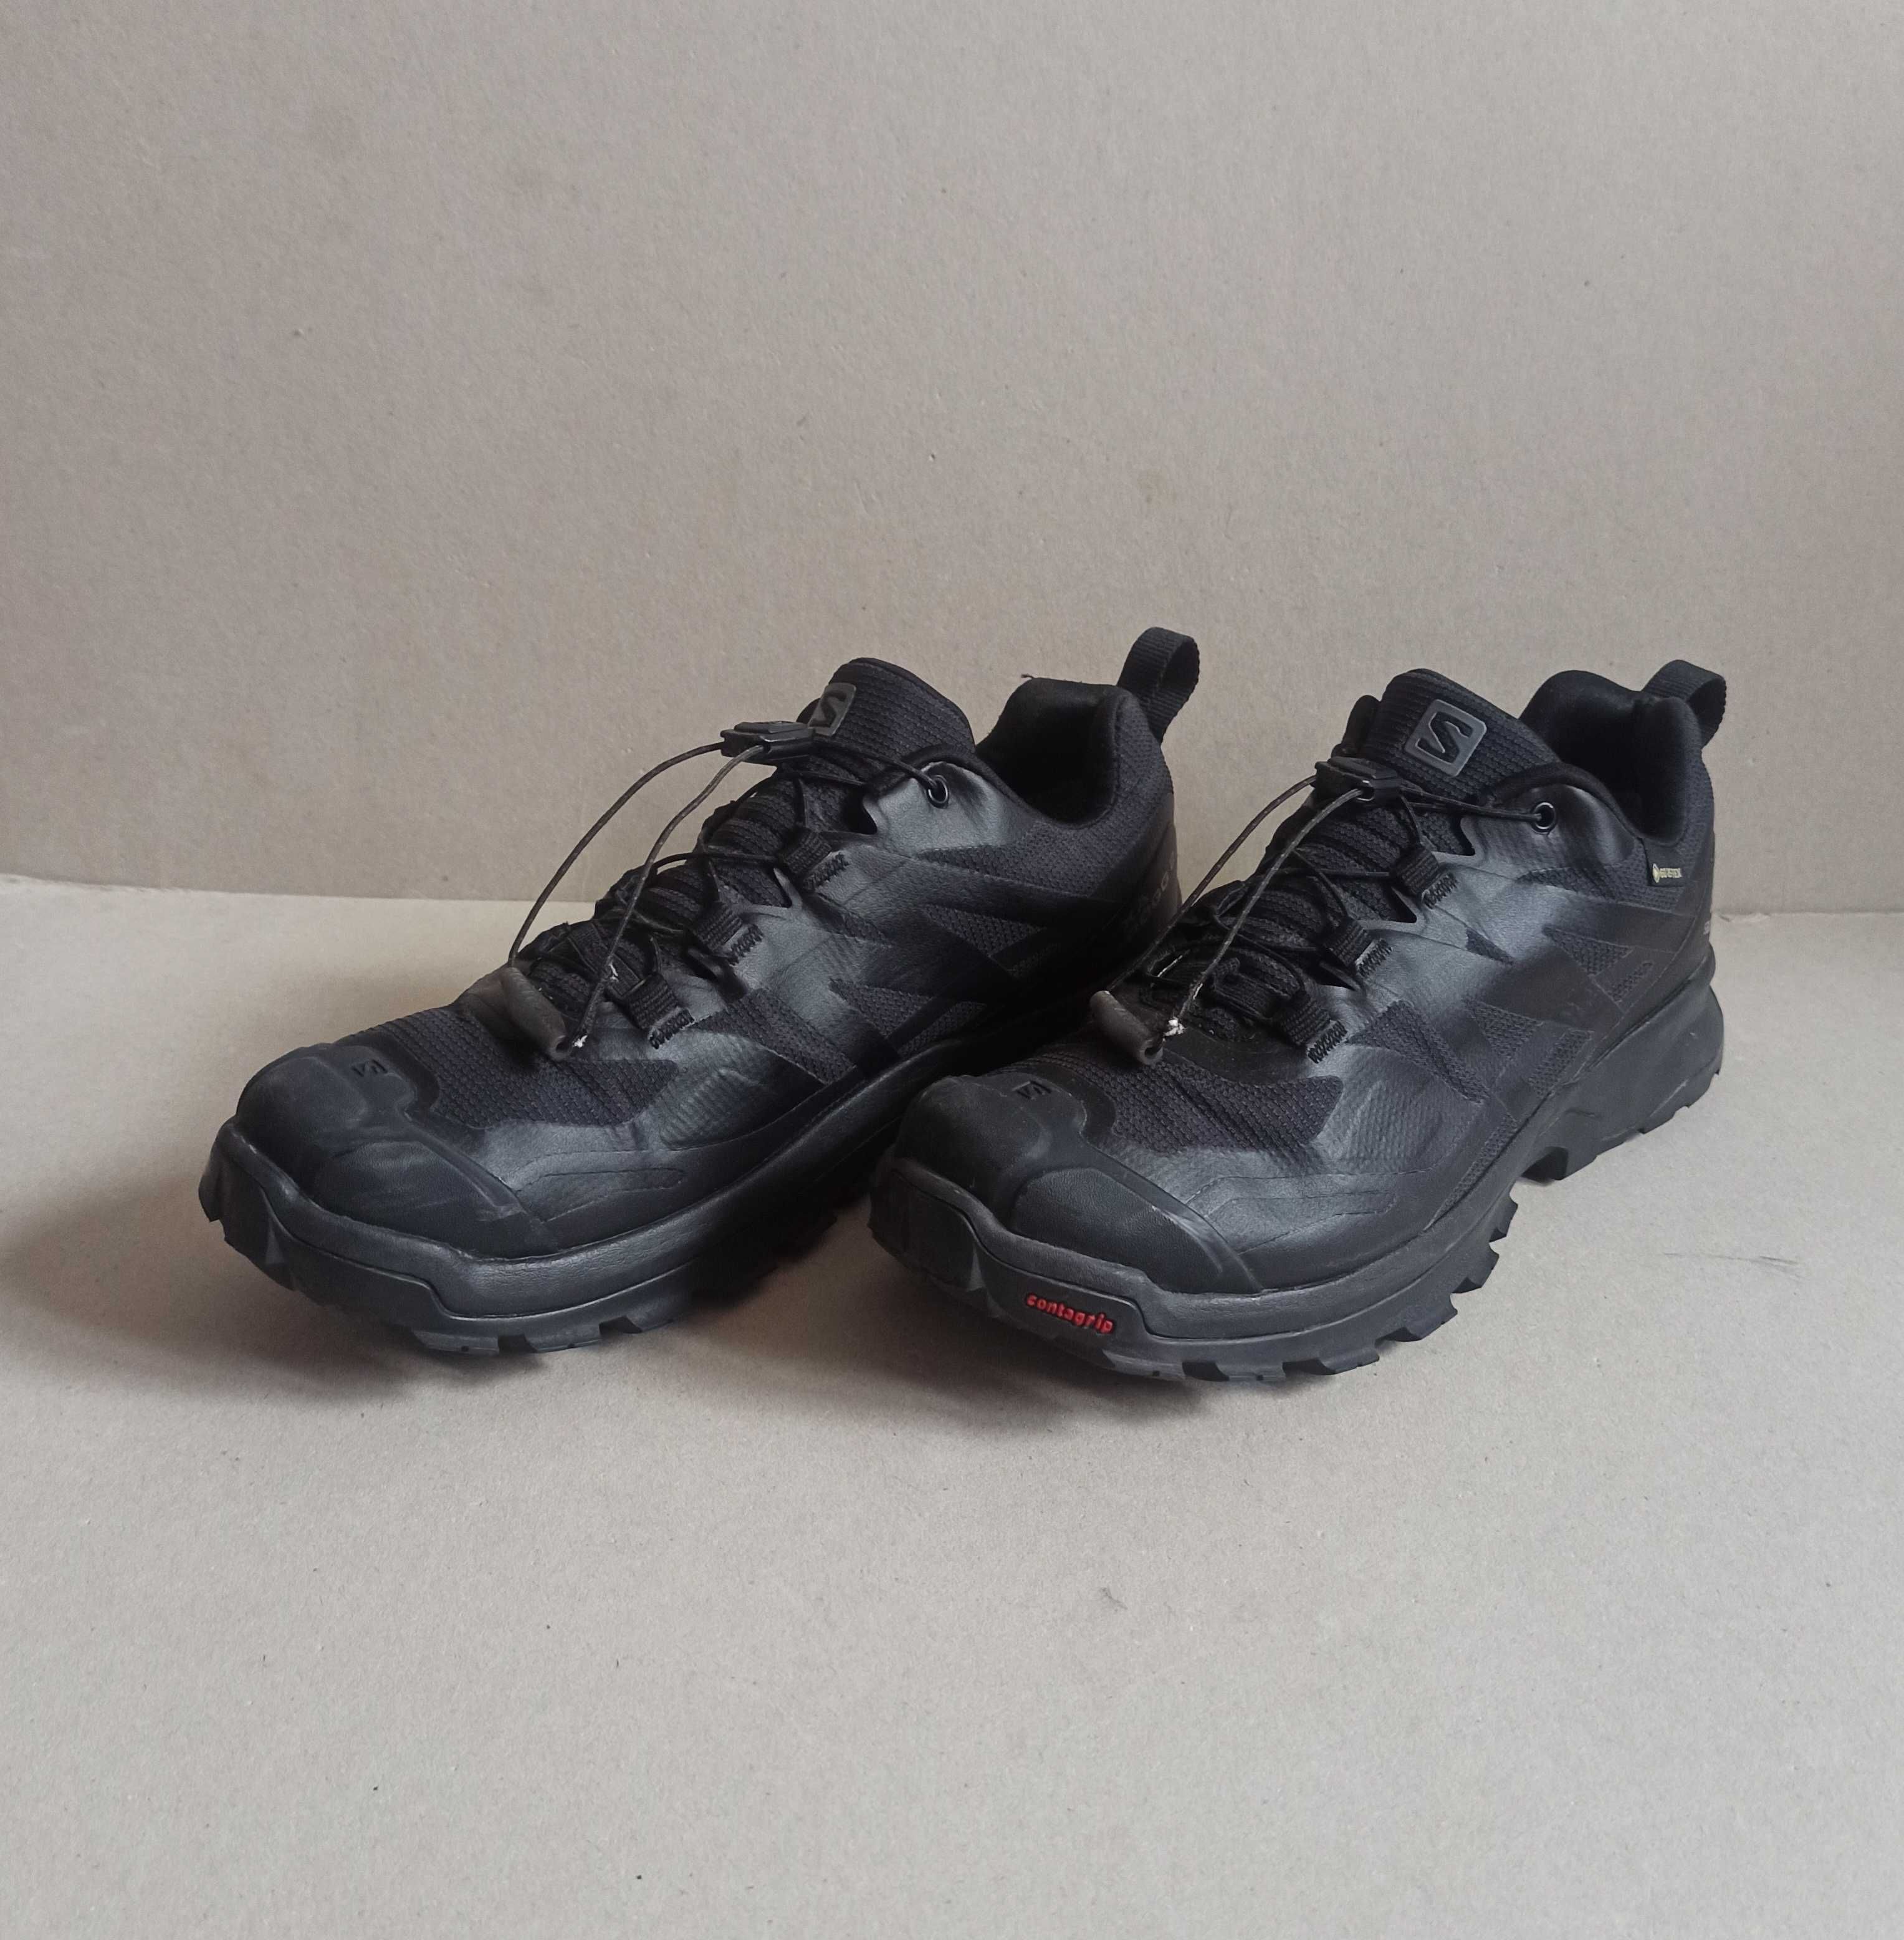 Damskie buty Salomon XA Rogg 2 GTX roz.38 2/3